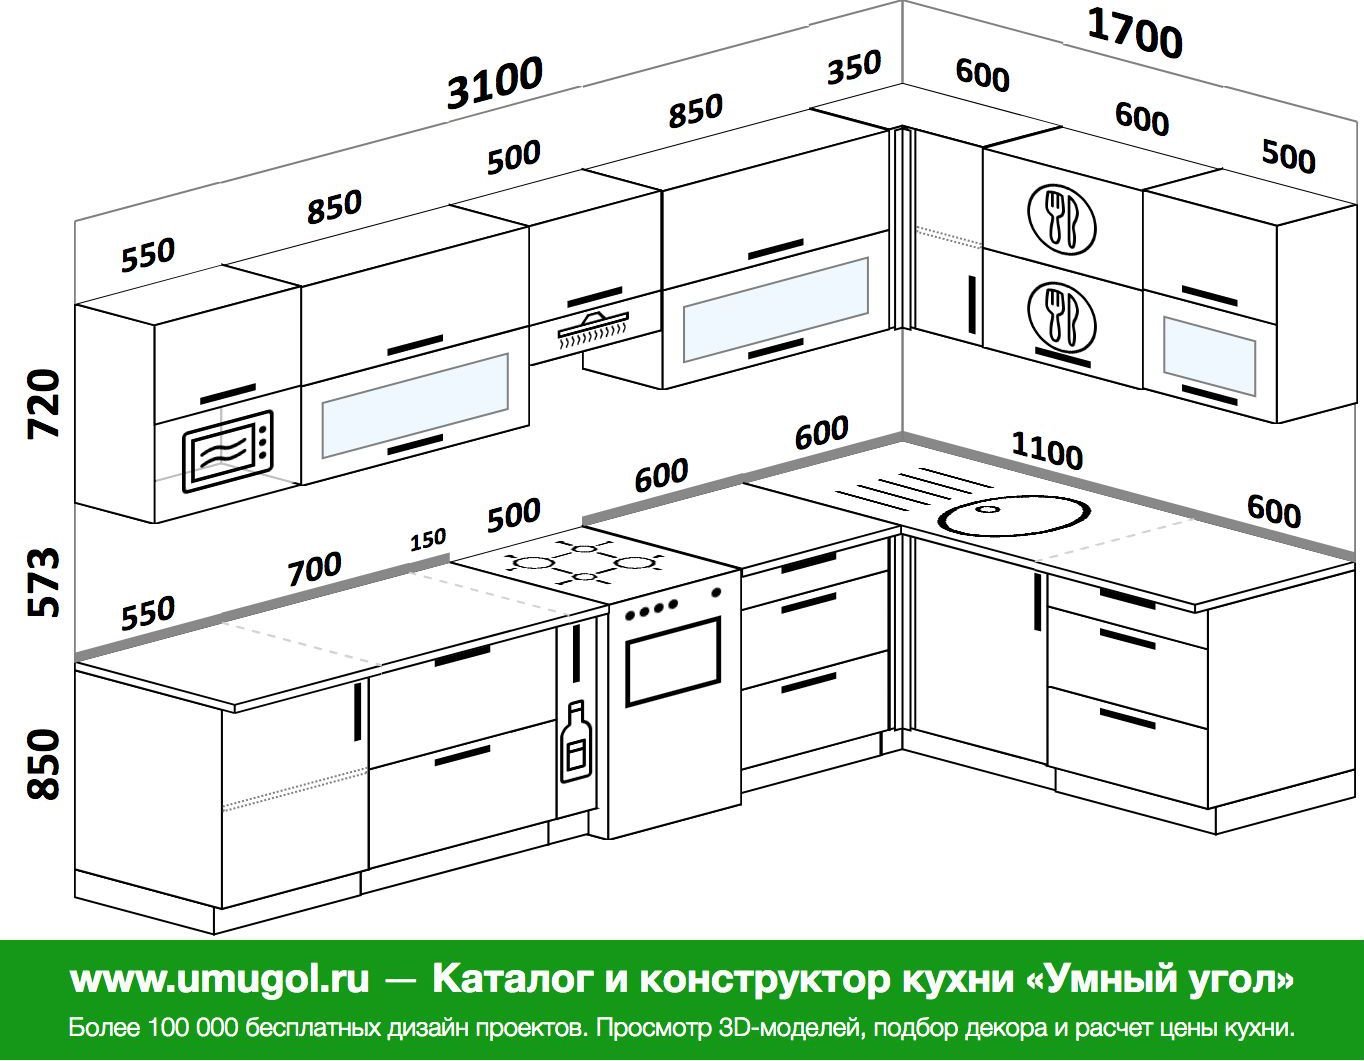 Размер от столешницы до навесных шкафов на кухне